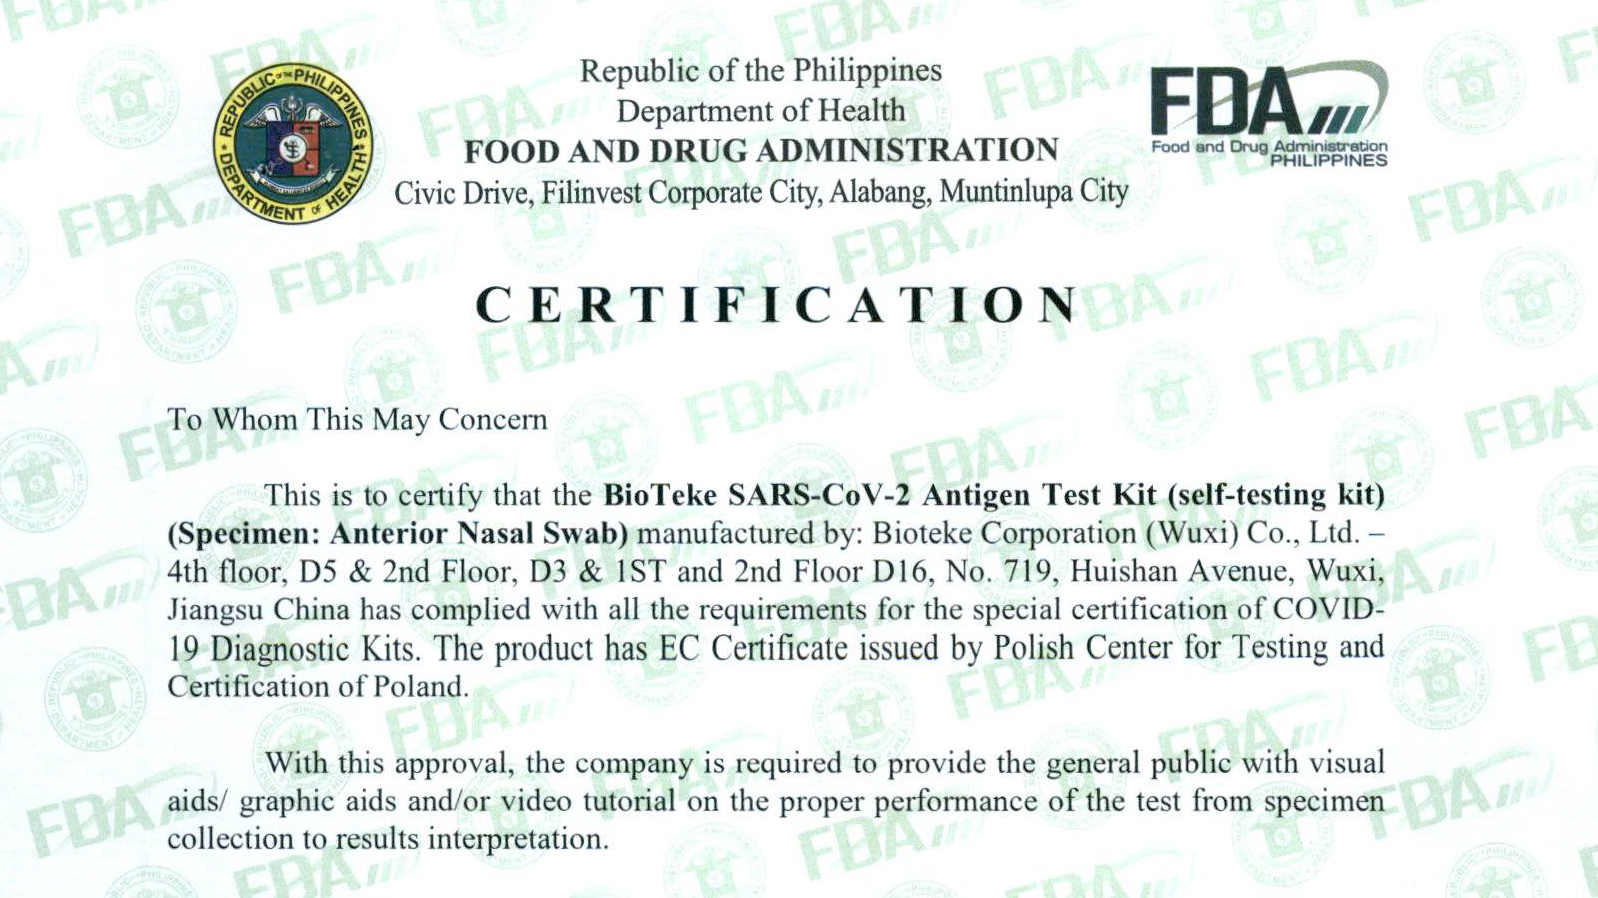 شهادة جديدة! حصلت BioTeke على شهادة إدارة الغذاء والدواء الفلبينية!